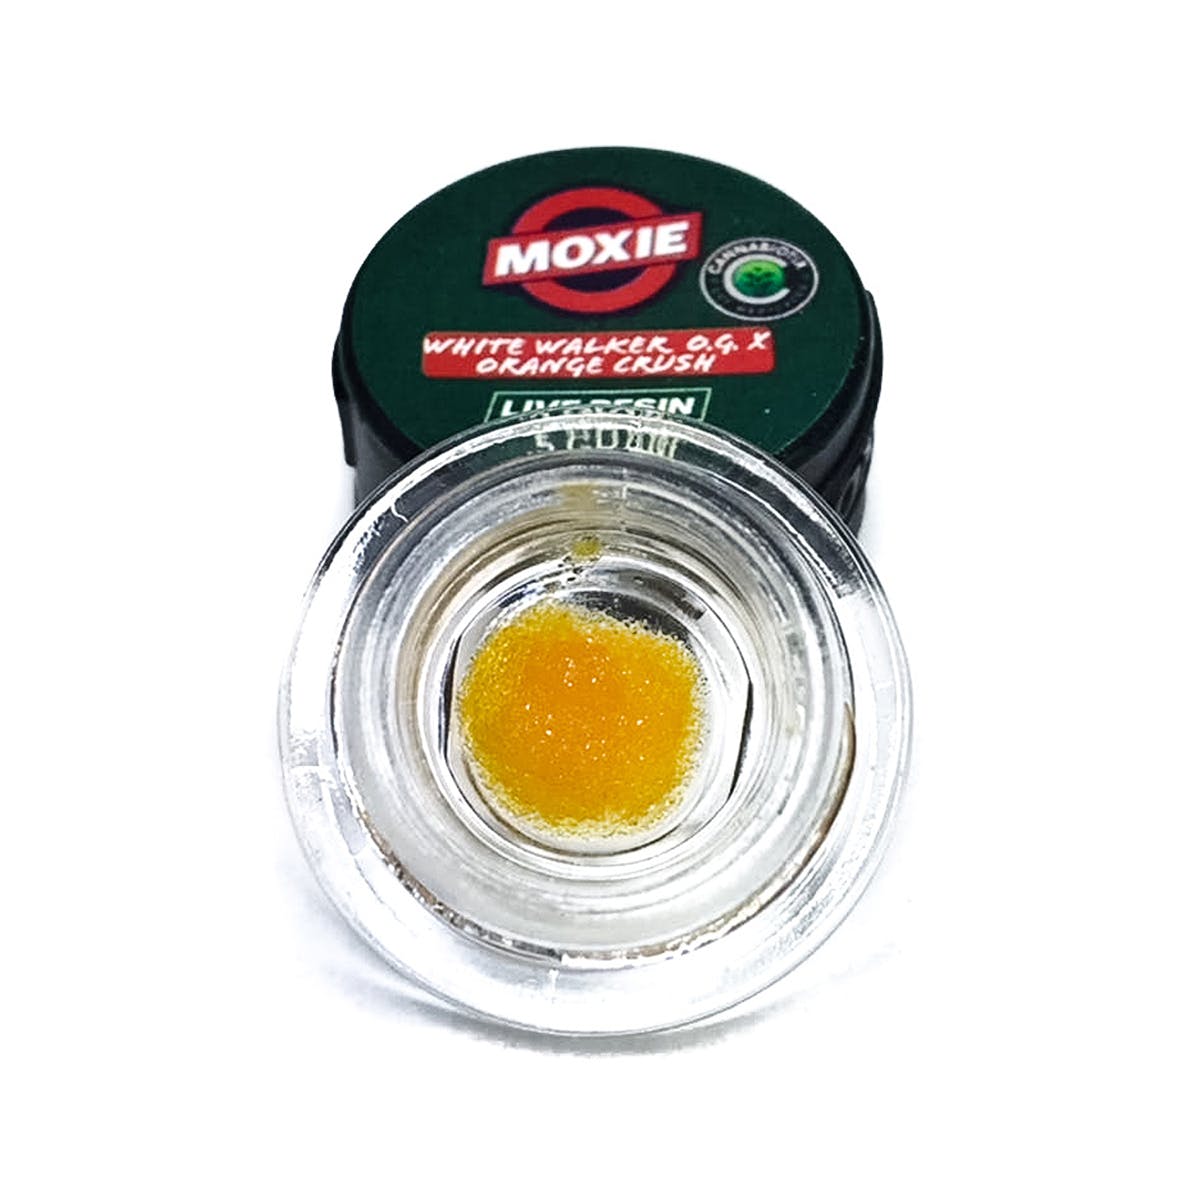 wax-moxie-white-walker-og-orange-crush-live-resin-sauce